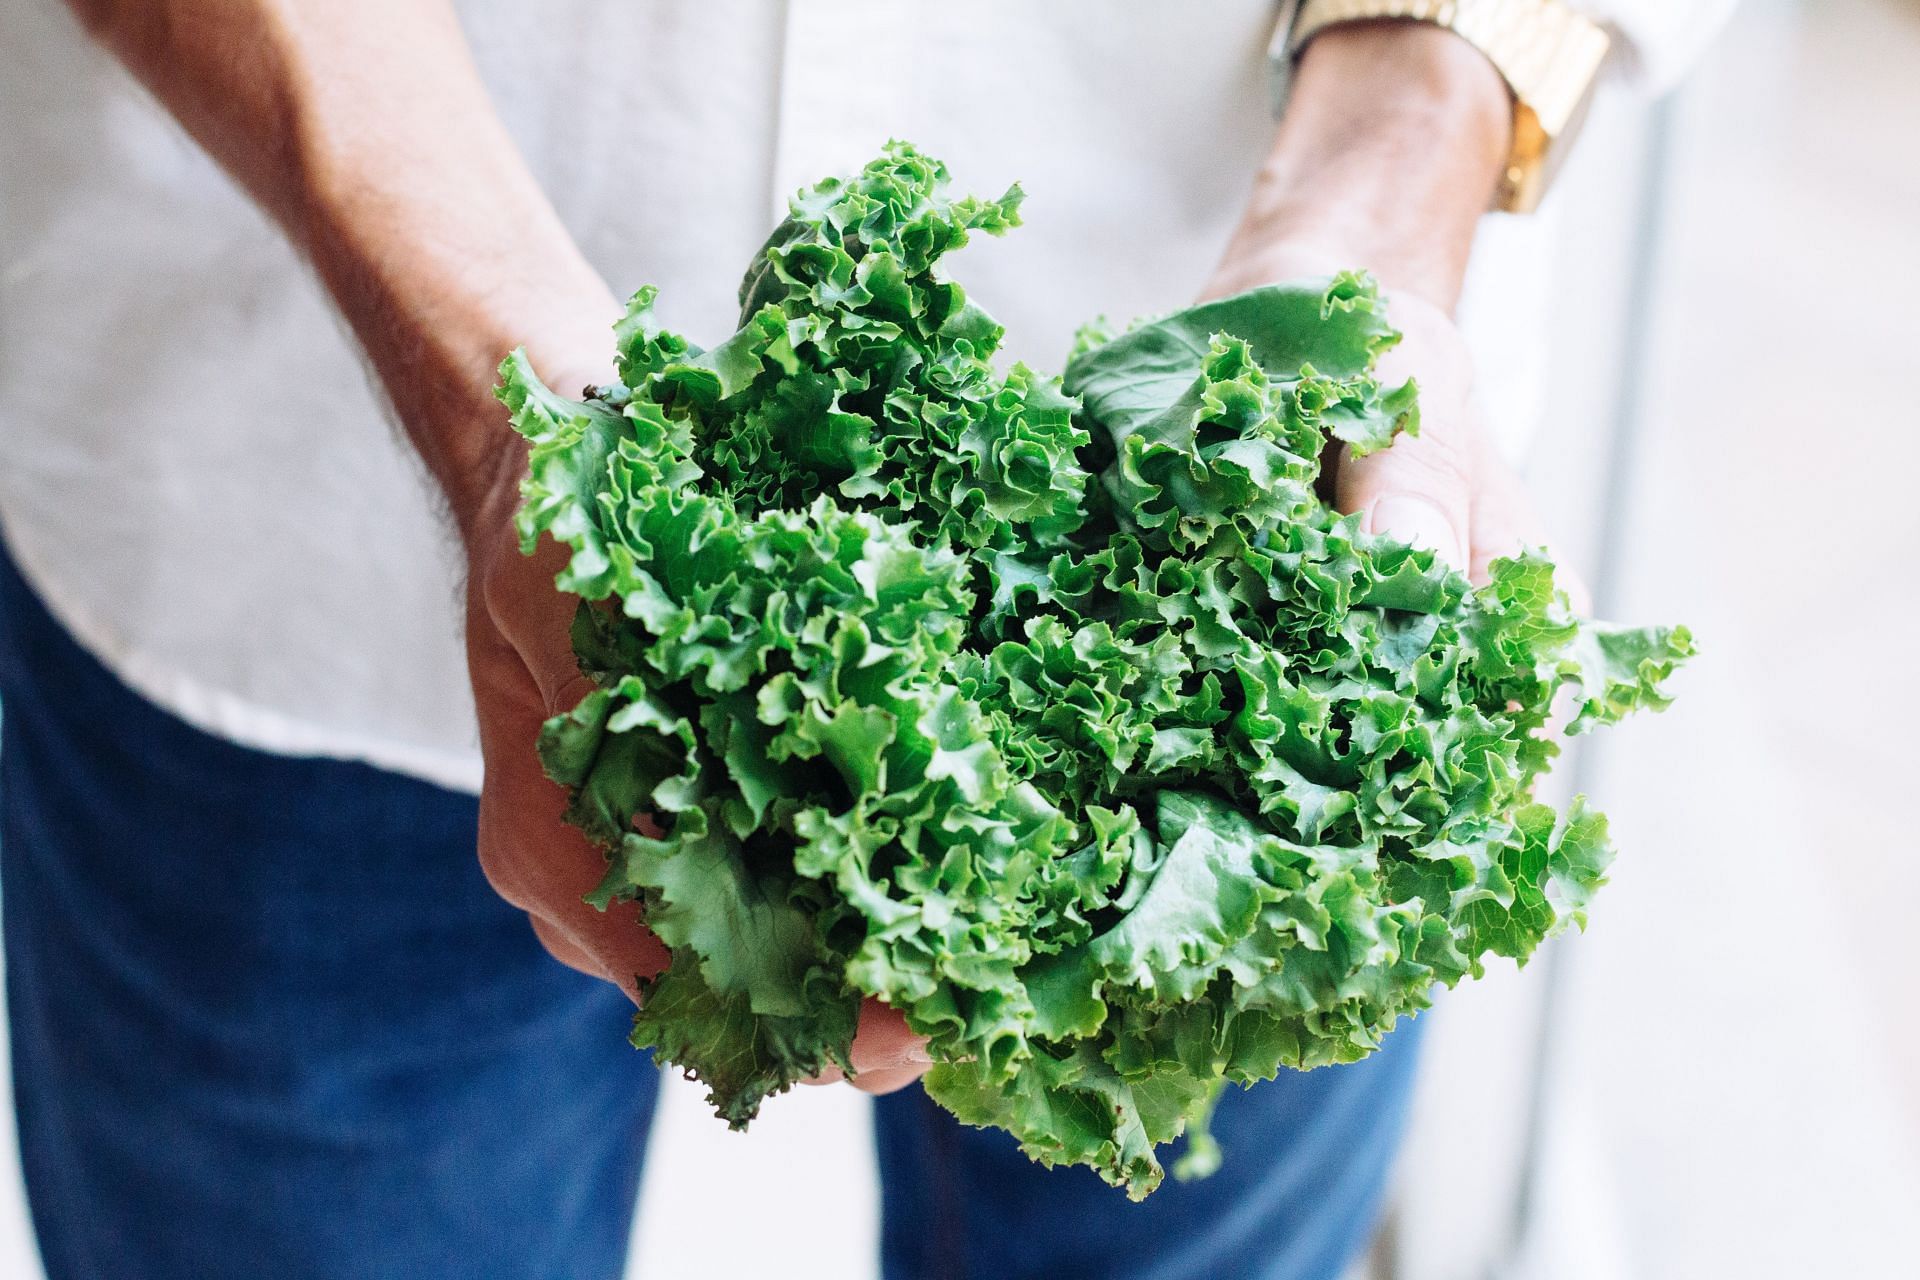 Is kale bad for you? (Image via Unsplash / Adolfo)